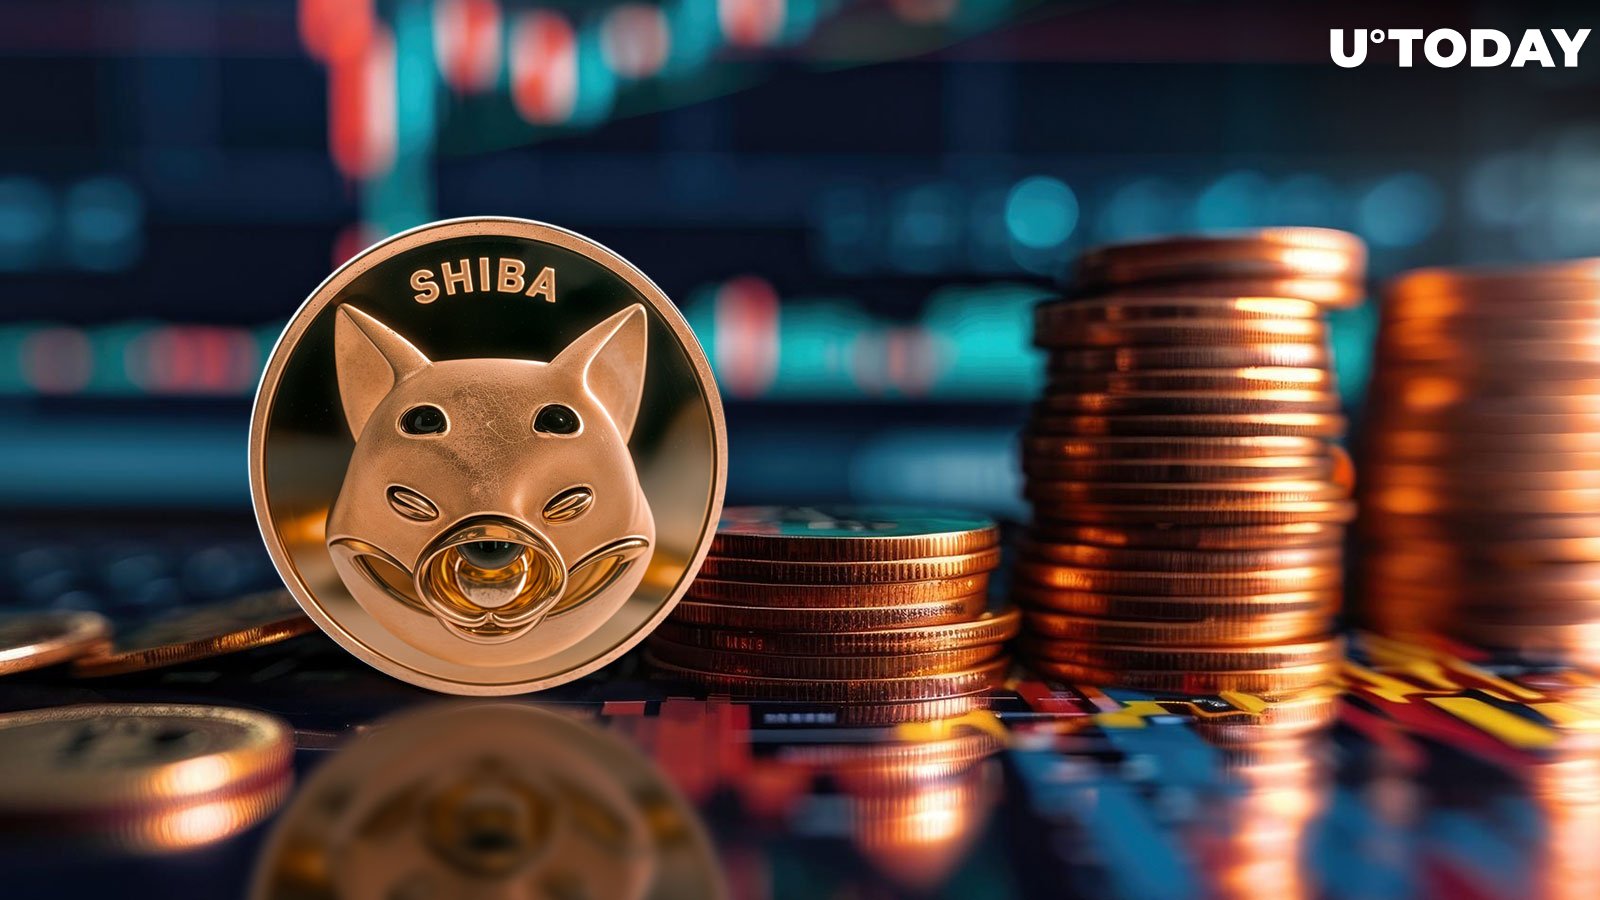 Shiba Inu (SHIB) Buy Signals Emerge Amid Crypto Bloodbath